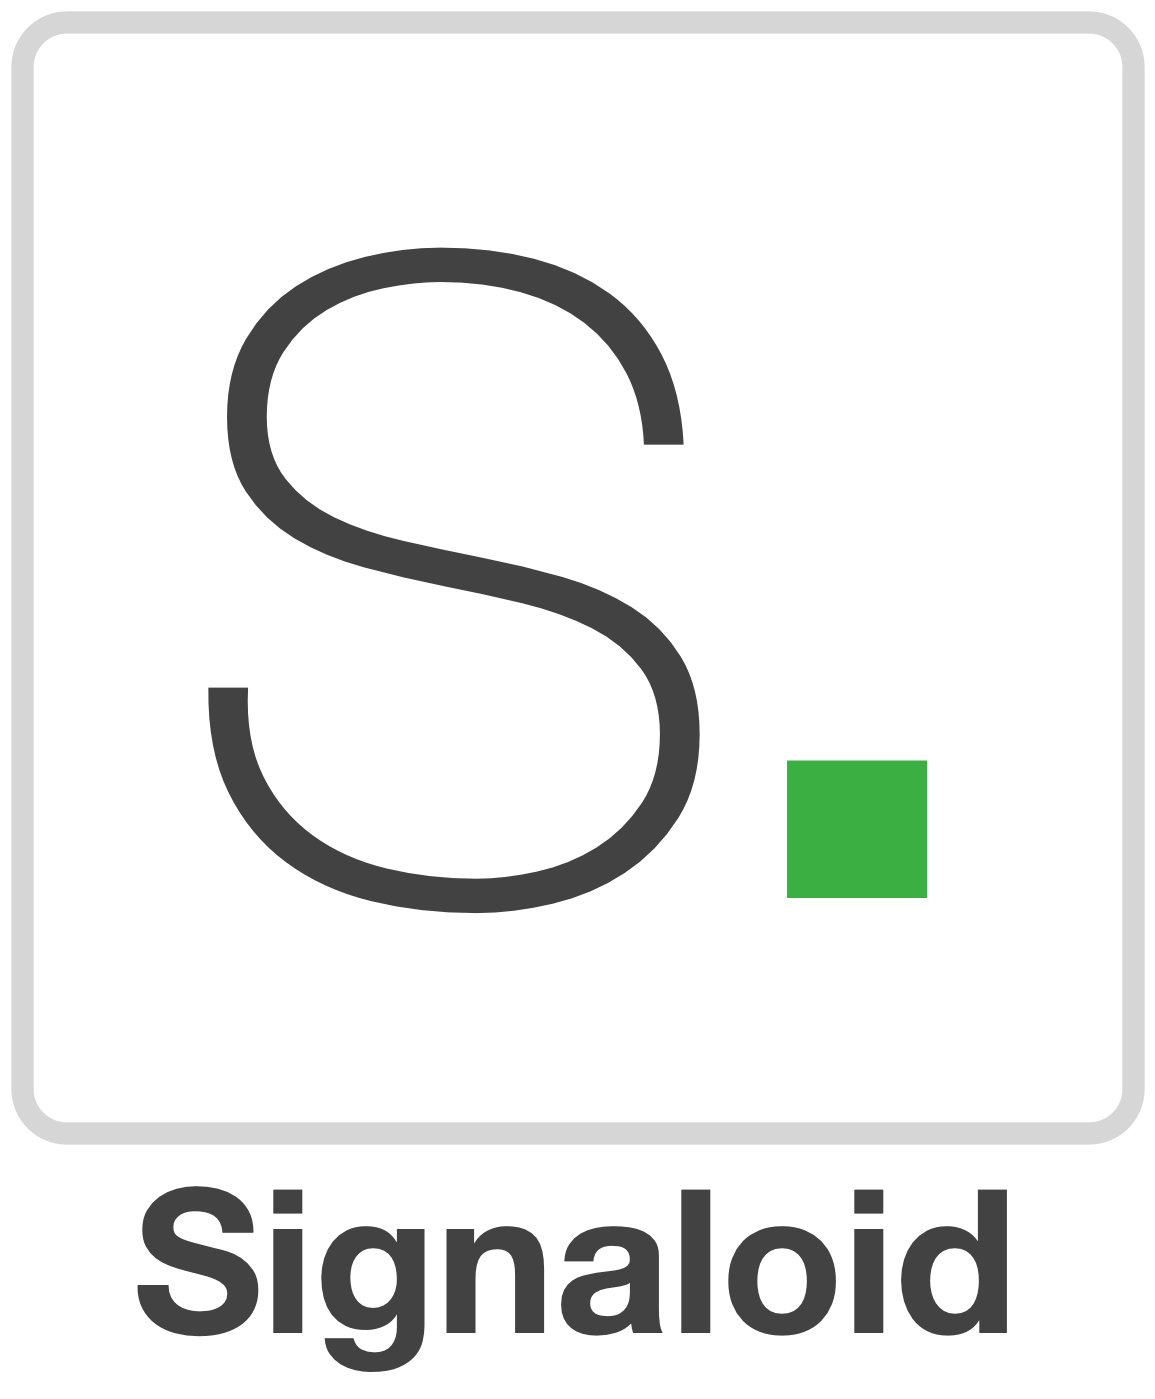 Signaloid